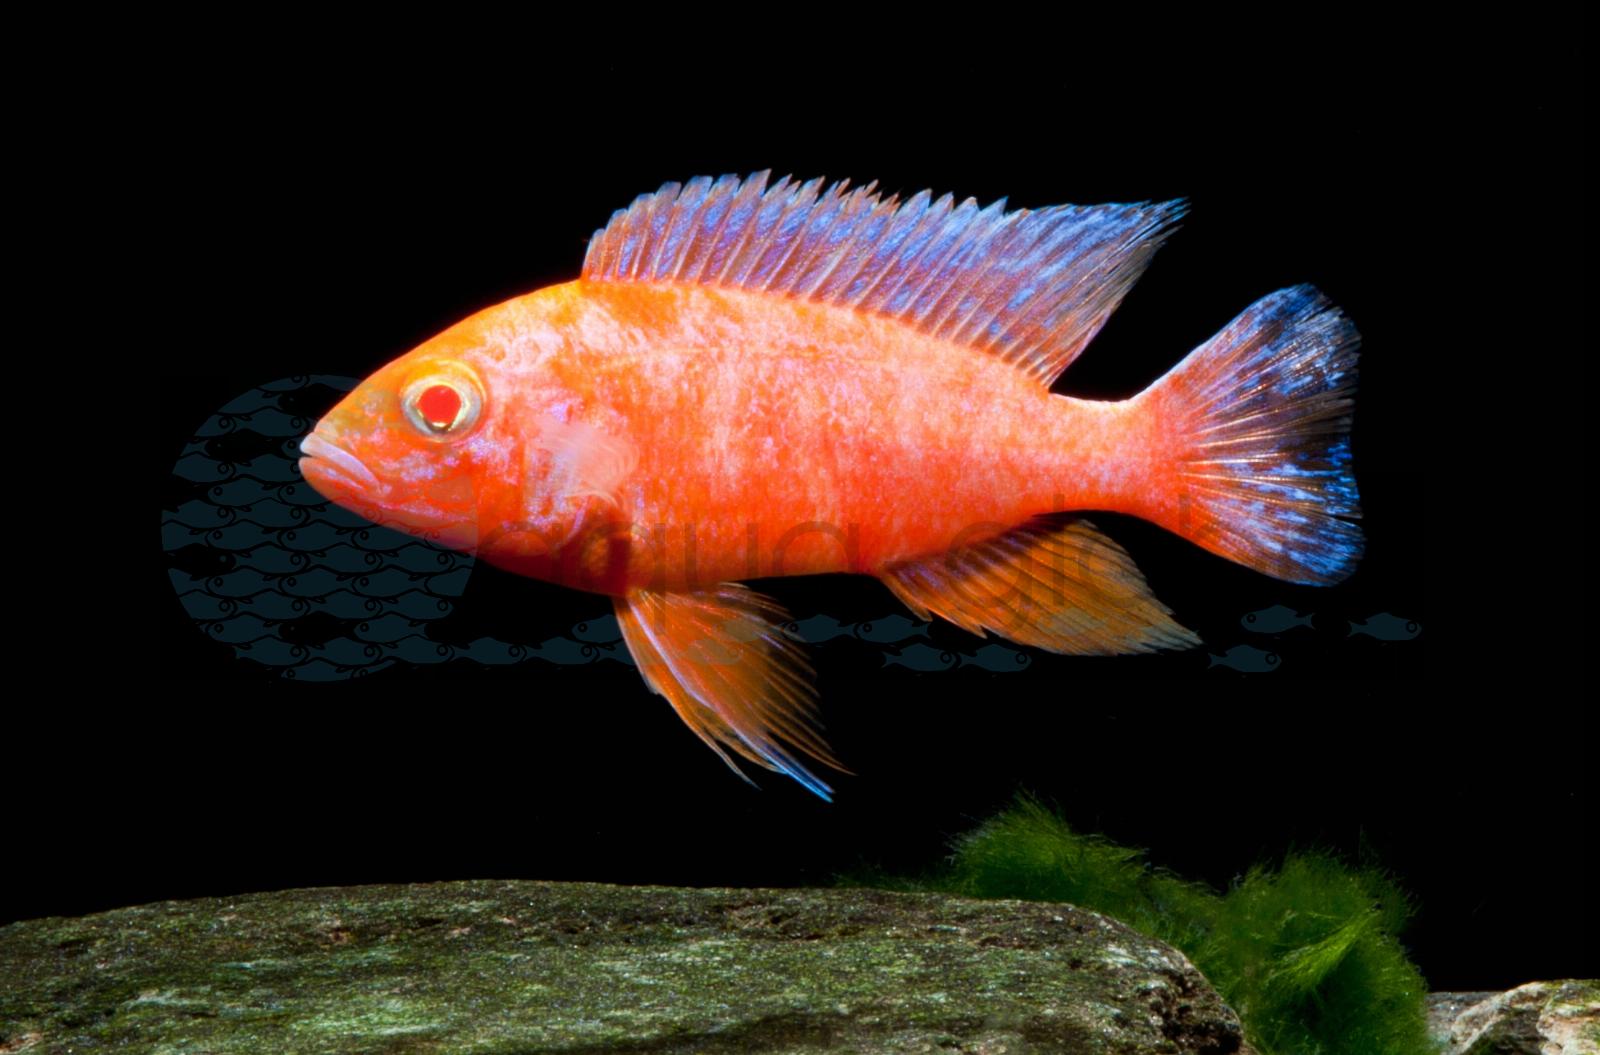 Kaiserbuntbarsch-Fire-Fish (Aulonocara sp. "Fire Fish Red Eye")